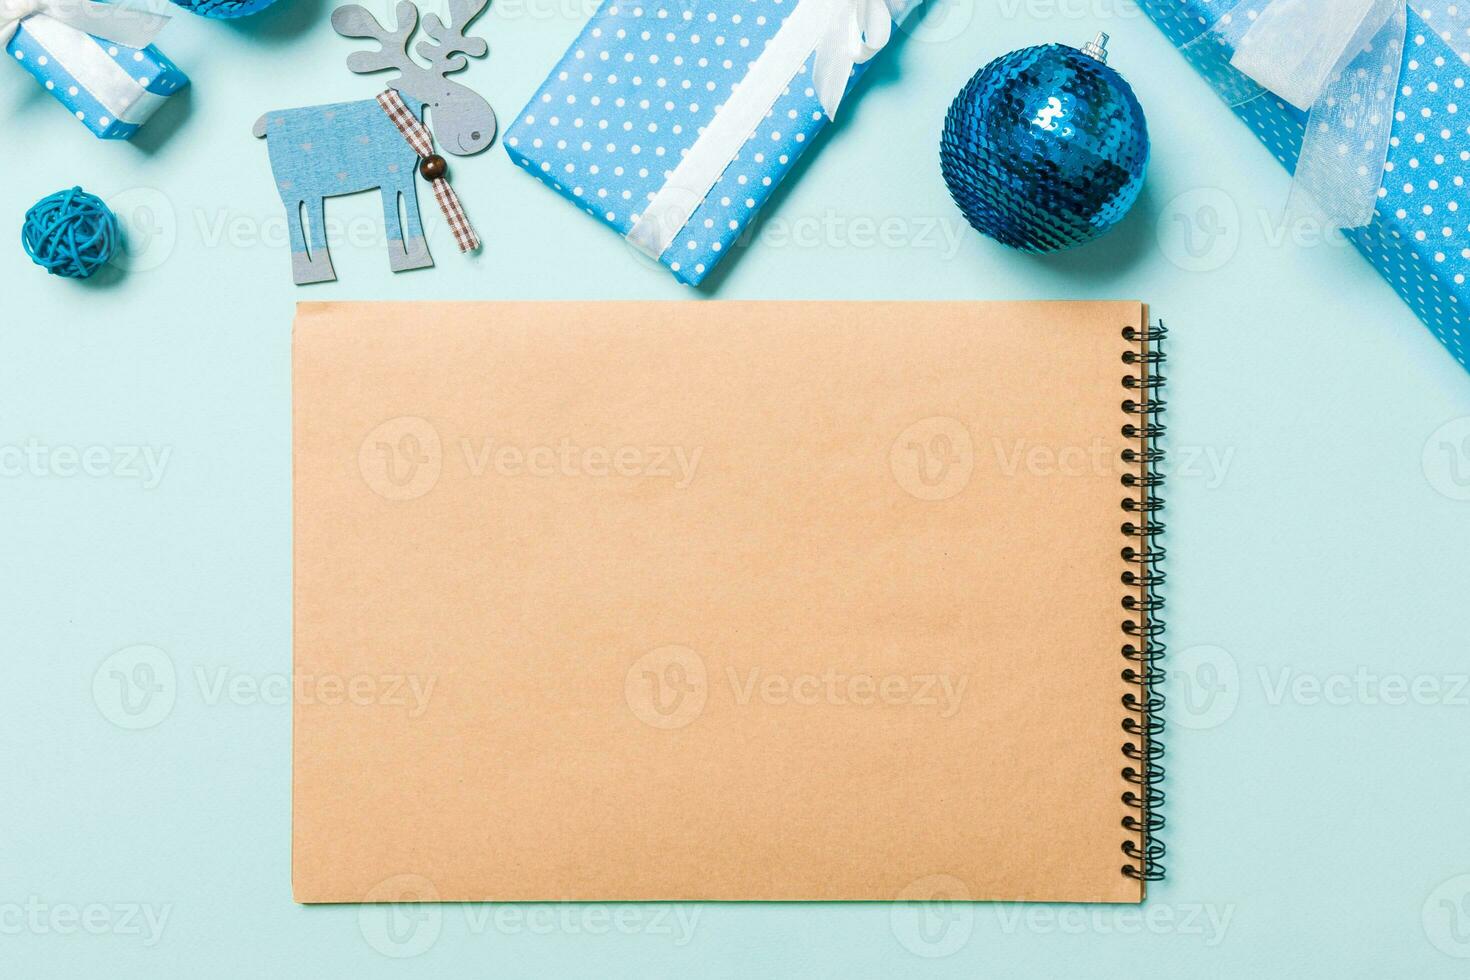 vue de dessus du cahier sur fond bleu fait de décorations de noël. concept de temps du nouvel an photo